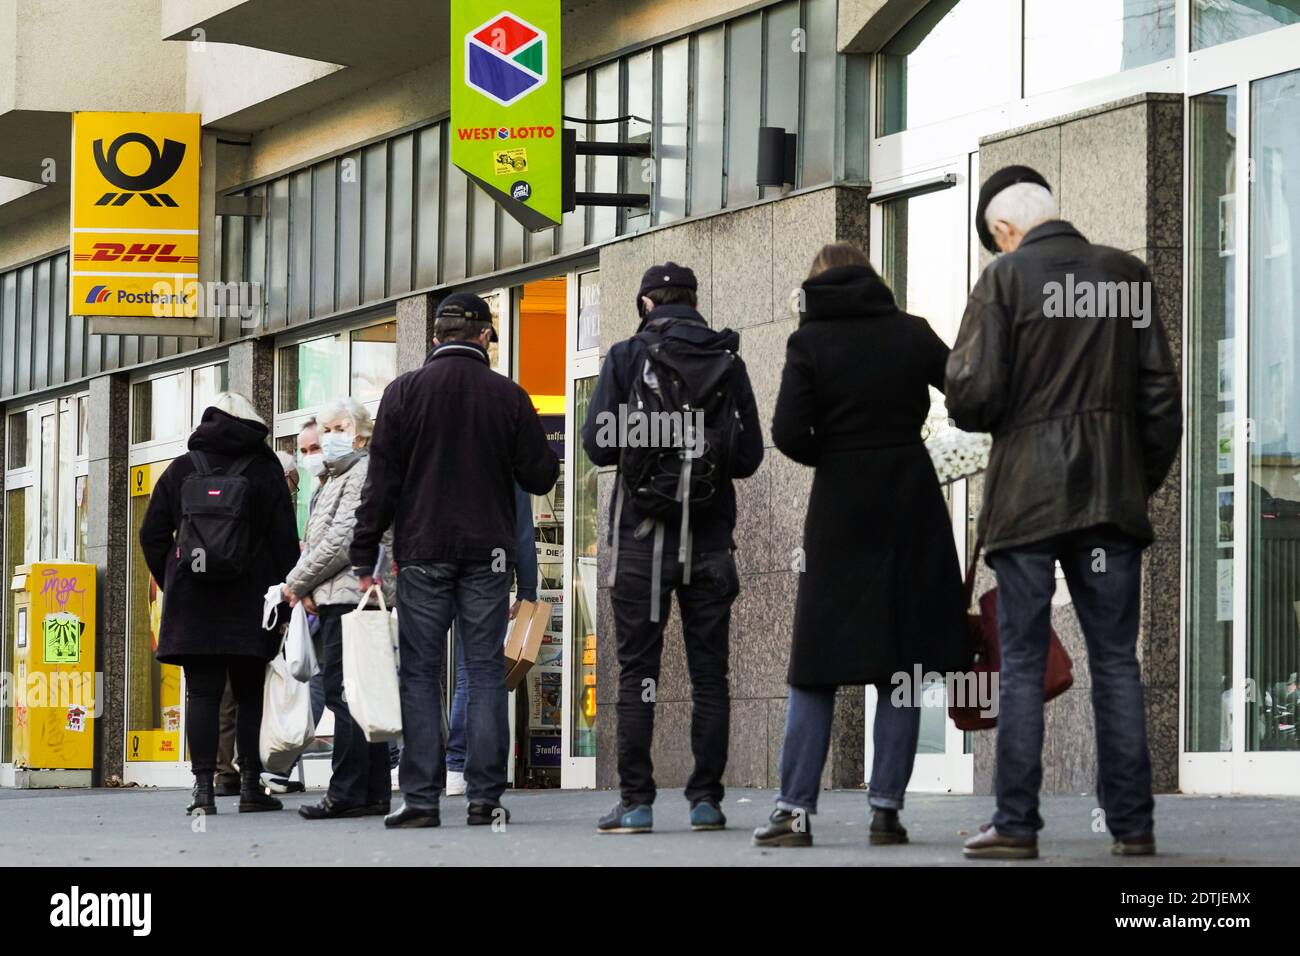 Dortmund, Germania, 18 dicembre 2020: I clienti aspettano sul marciapiede di fronte ad una filiale di Deutsche Post/DHL a Dortmund. A causa delle limitazioni del secondo blocco della pandemia corona, solo 3 clienti sono autorizzati a rimanere in questa filiale contemporaneamente. Foto Stock